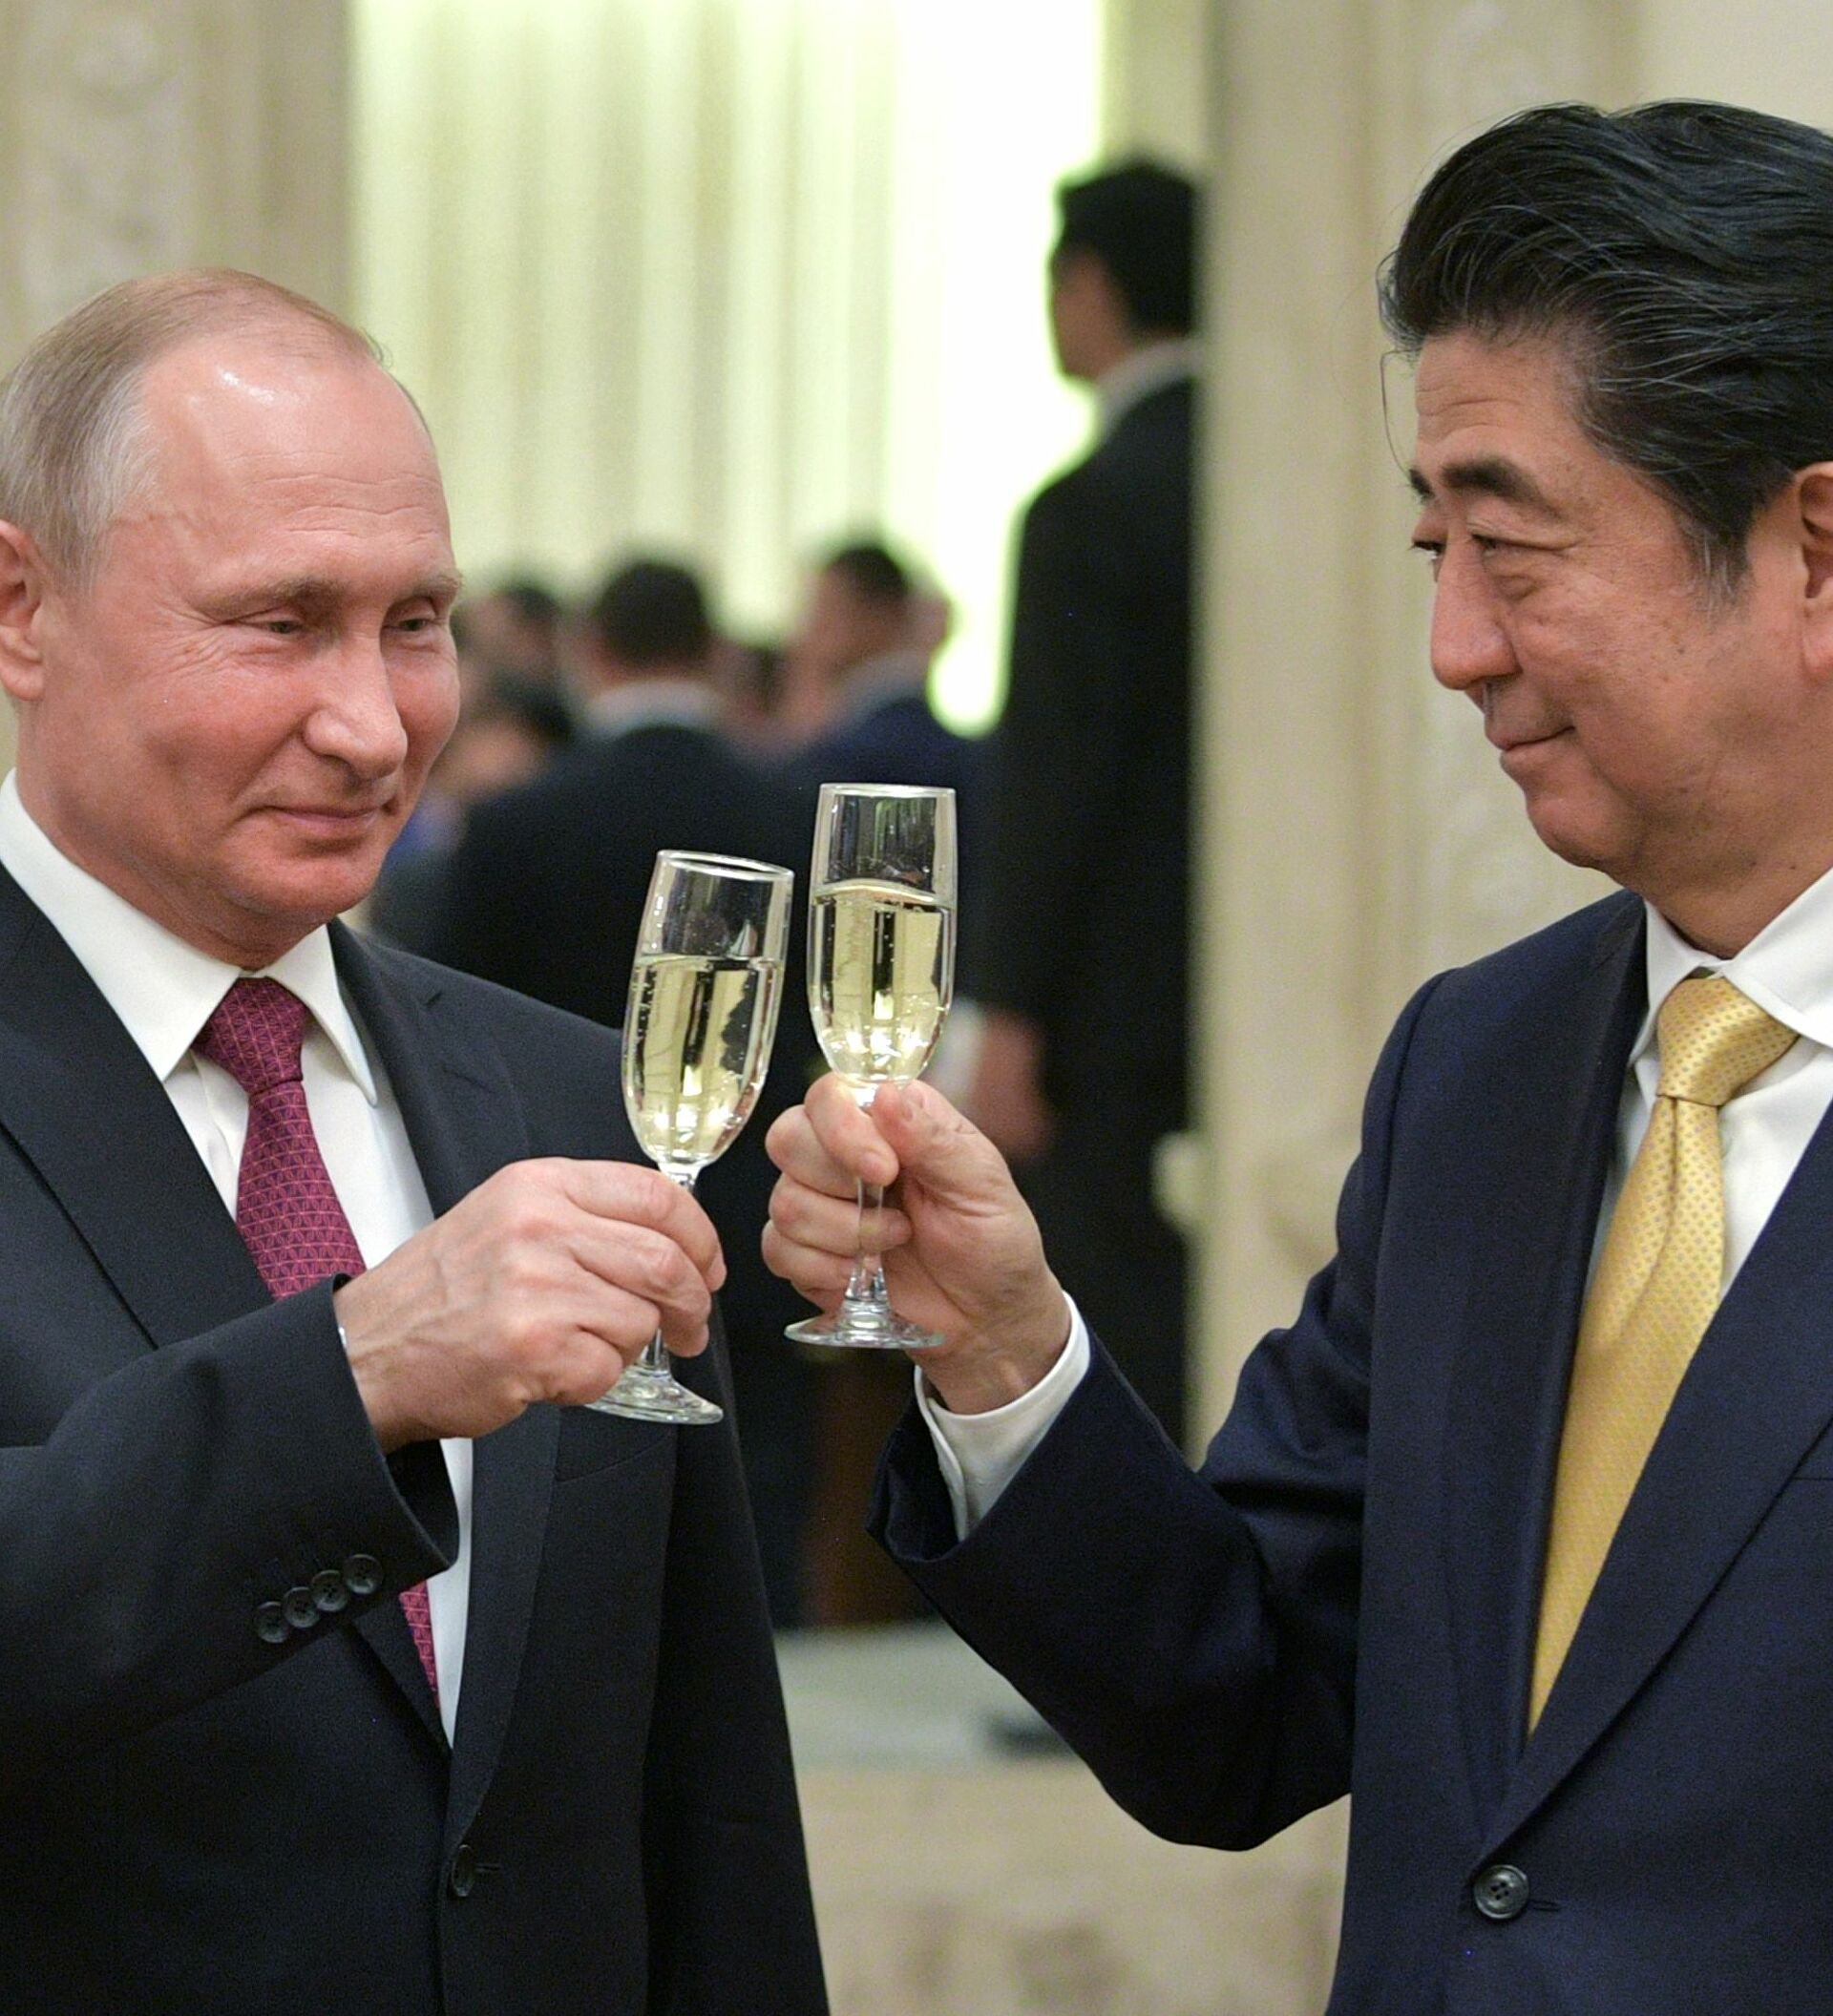 安心院スパーリングワイン乾杯 安倍元首相 プーチン大統領